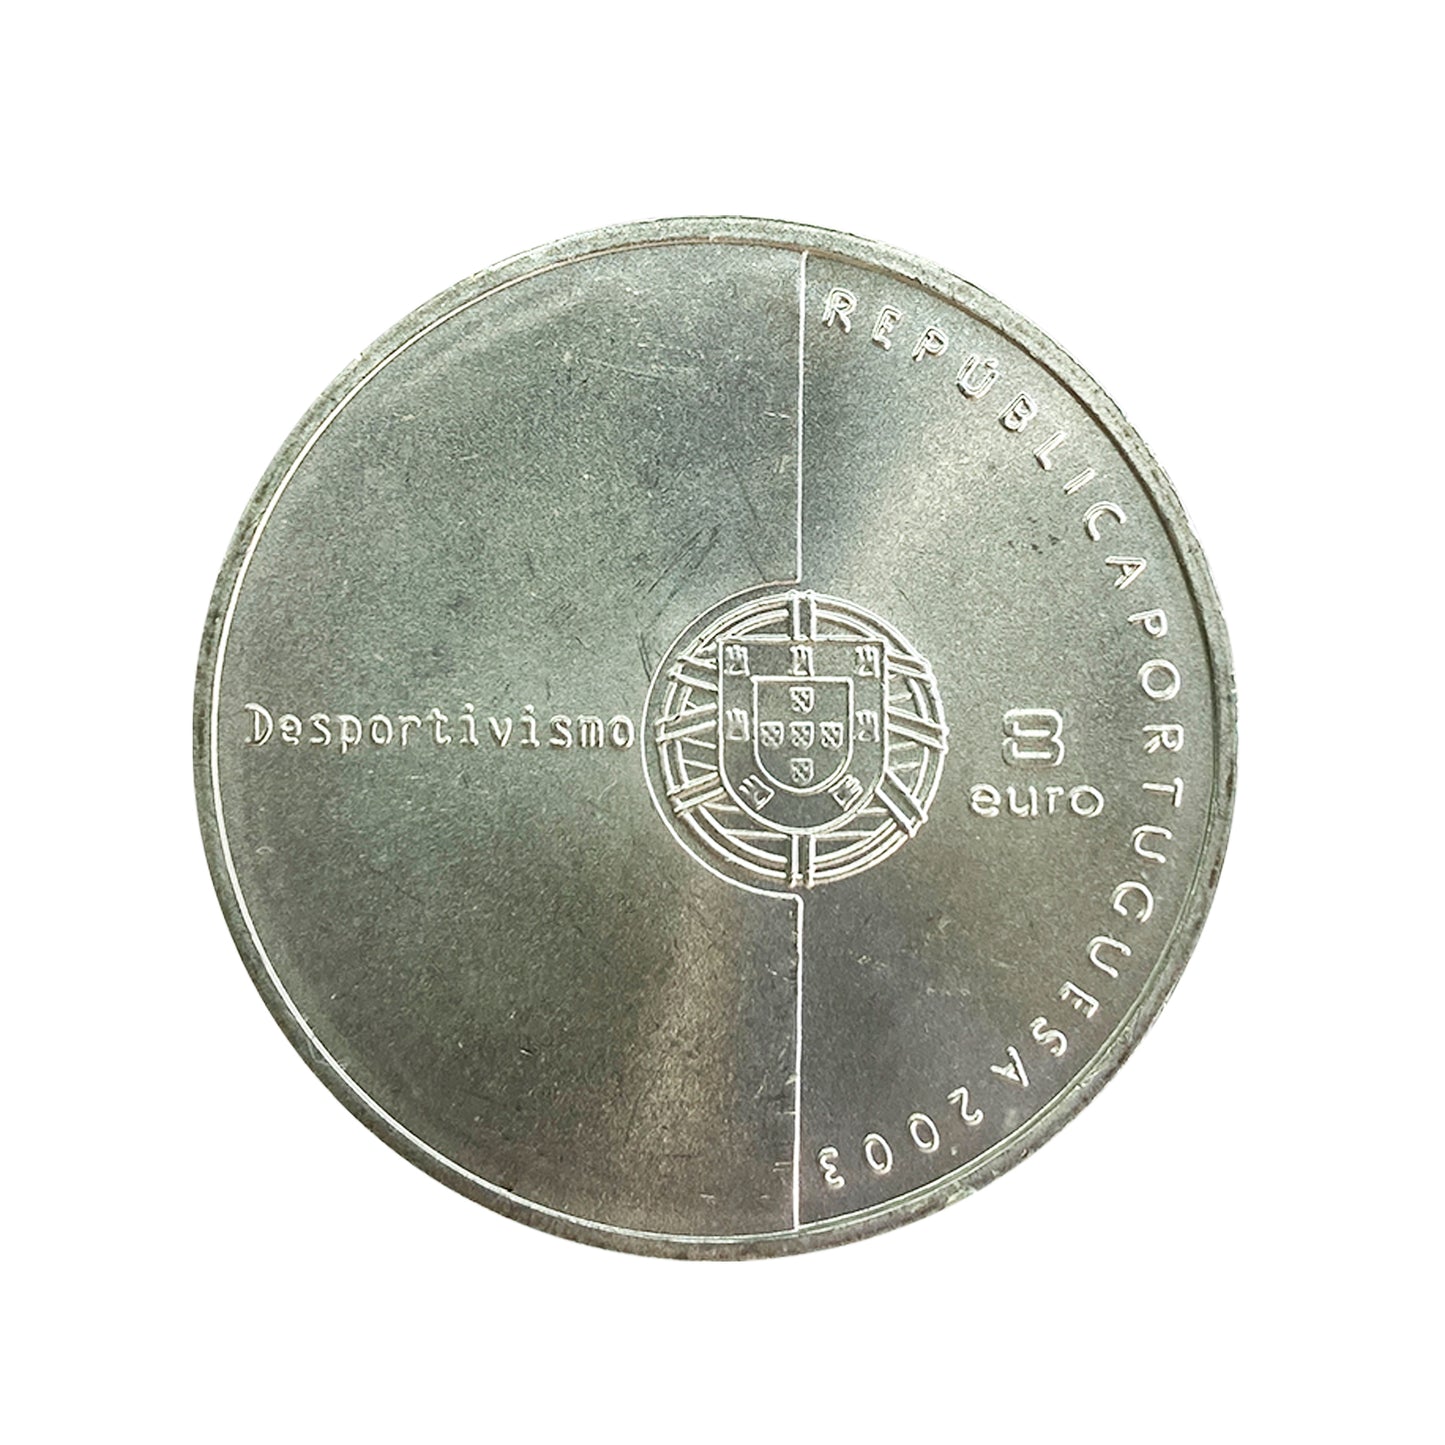 Portugal - Moneda 8 euros en plata 2003 - Los valores del fútbol. Juego limpio